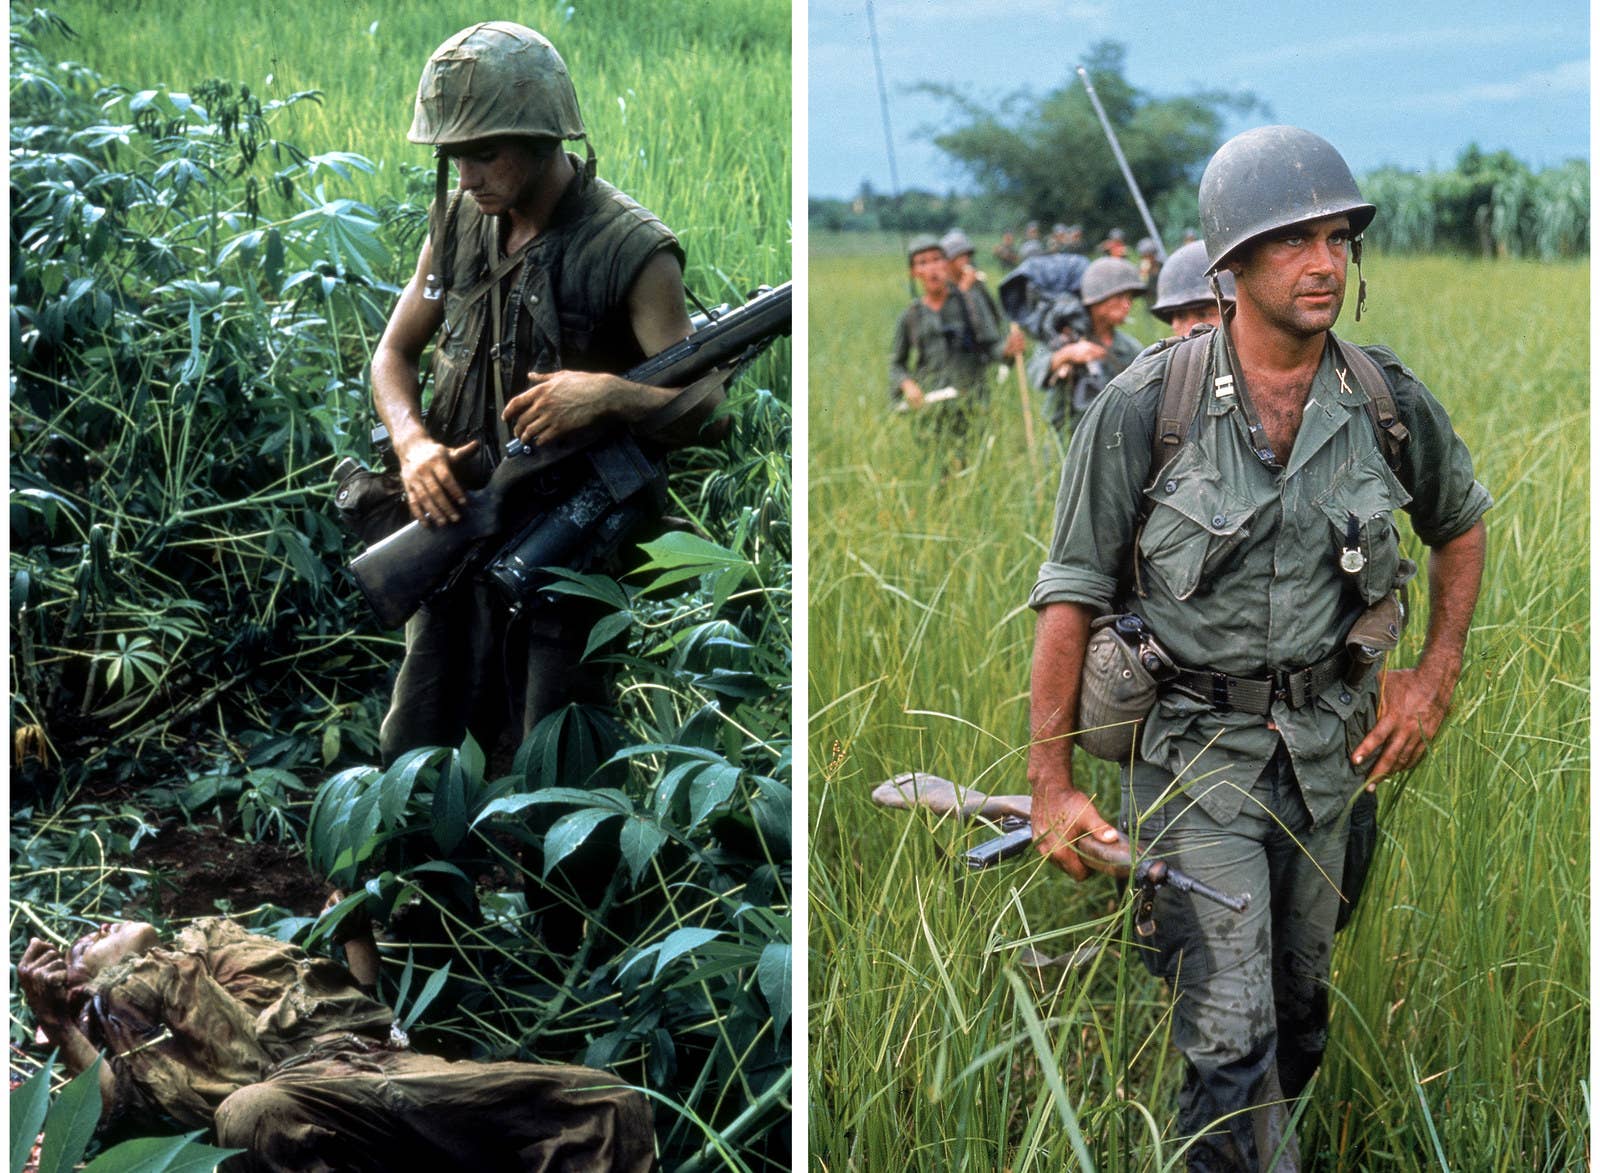 À esquerda, um soldado americano observa o corpo de um vietnamita morto durante a Operação Prairie, ao sul da zona desmilitarizada, em 1966. À direita, o capitão Robert Bacon lidera uma patrulha durante o início da guerra, em 1964.